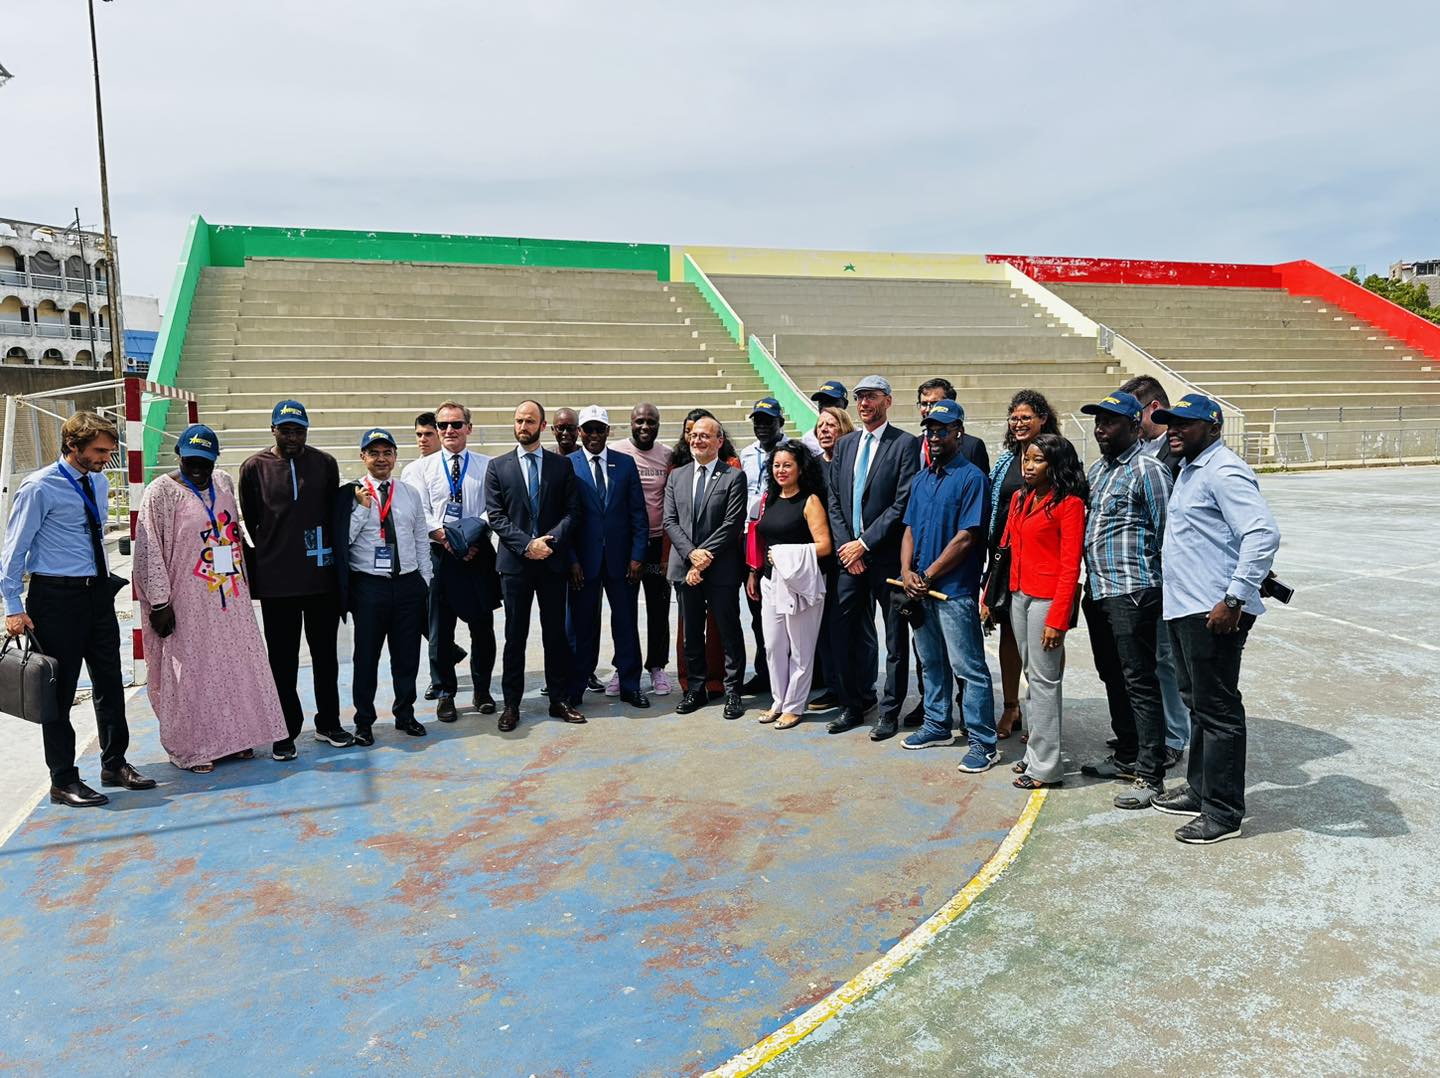 Jeux olympiques de la jeunesse Dakar 2026, Mise à niveau des infrastructures sportives